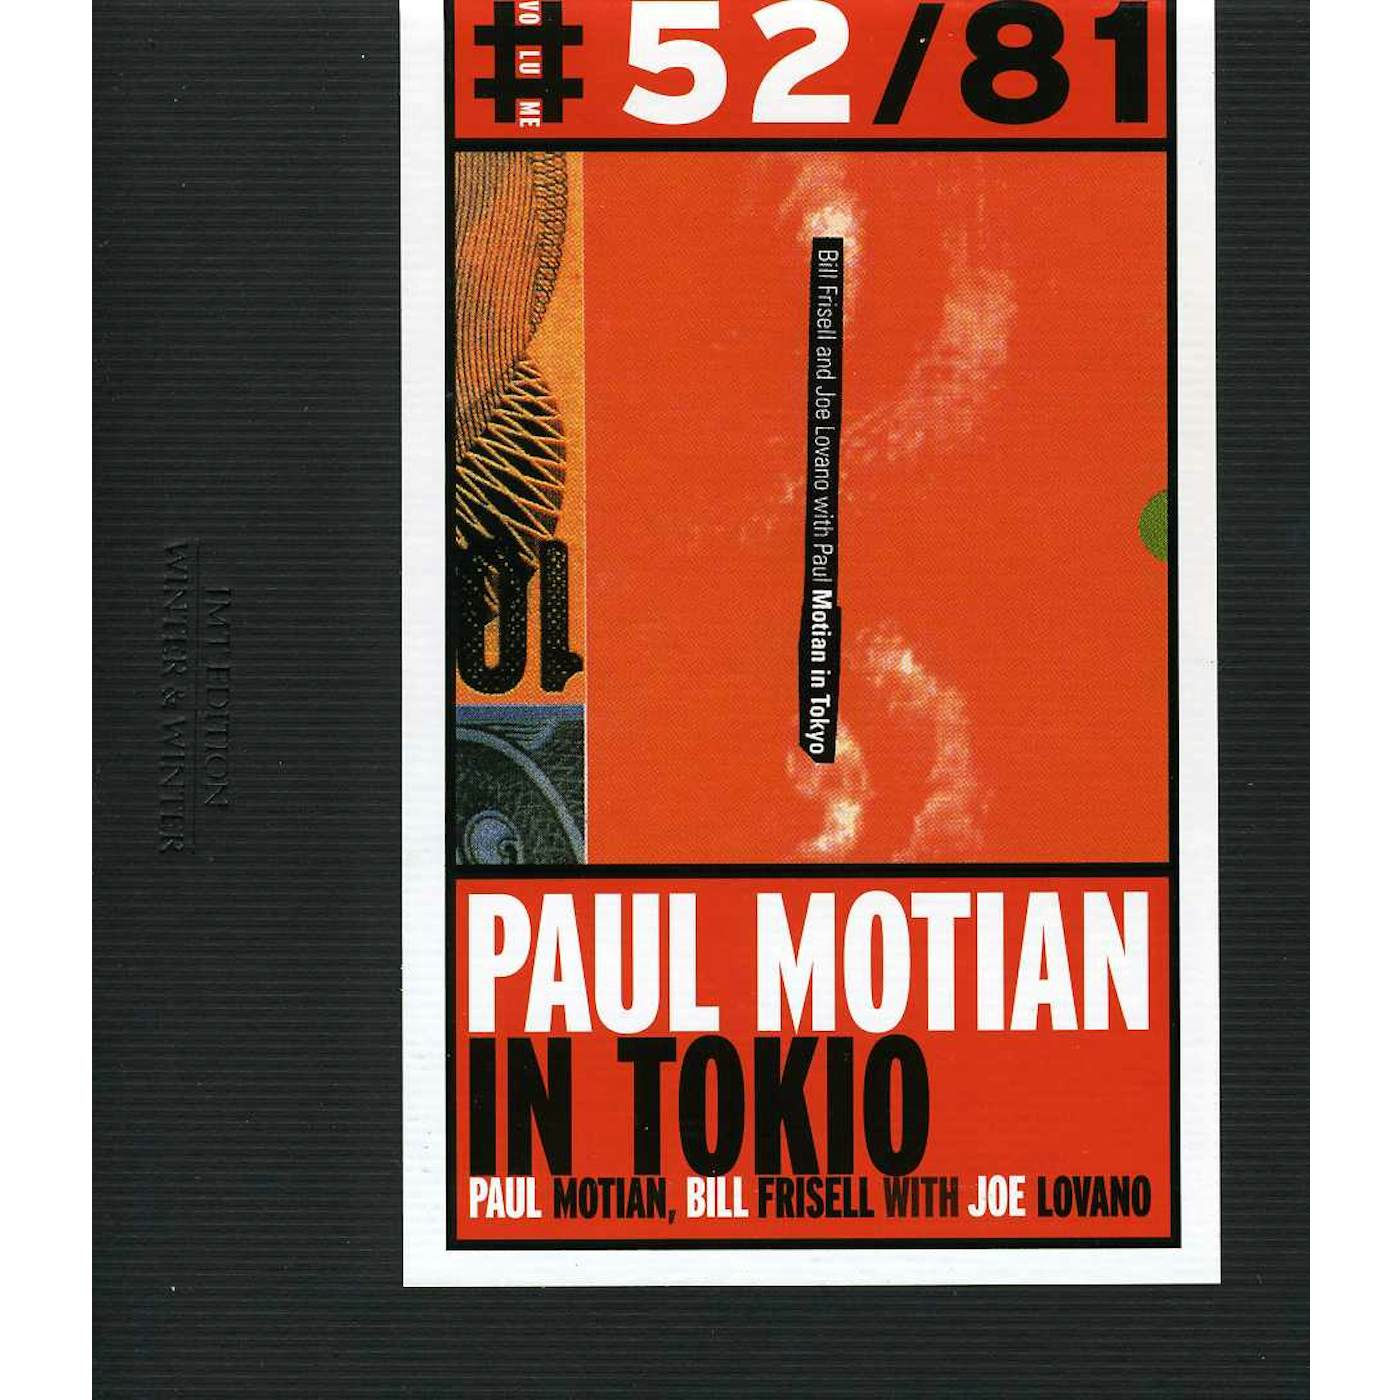 PAUL MOTIAN IN TOKIO CD